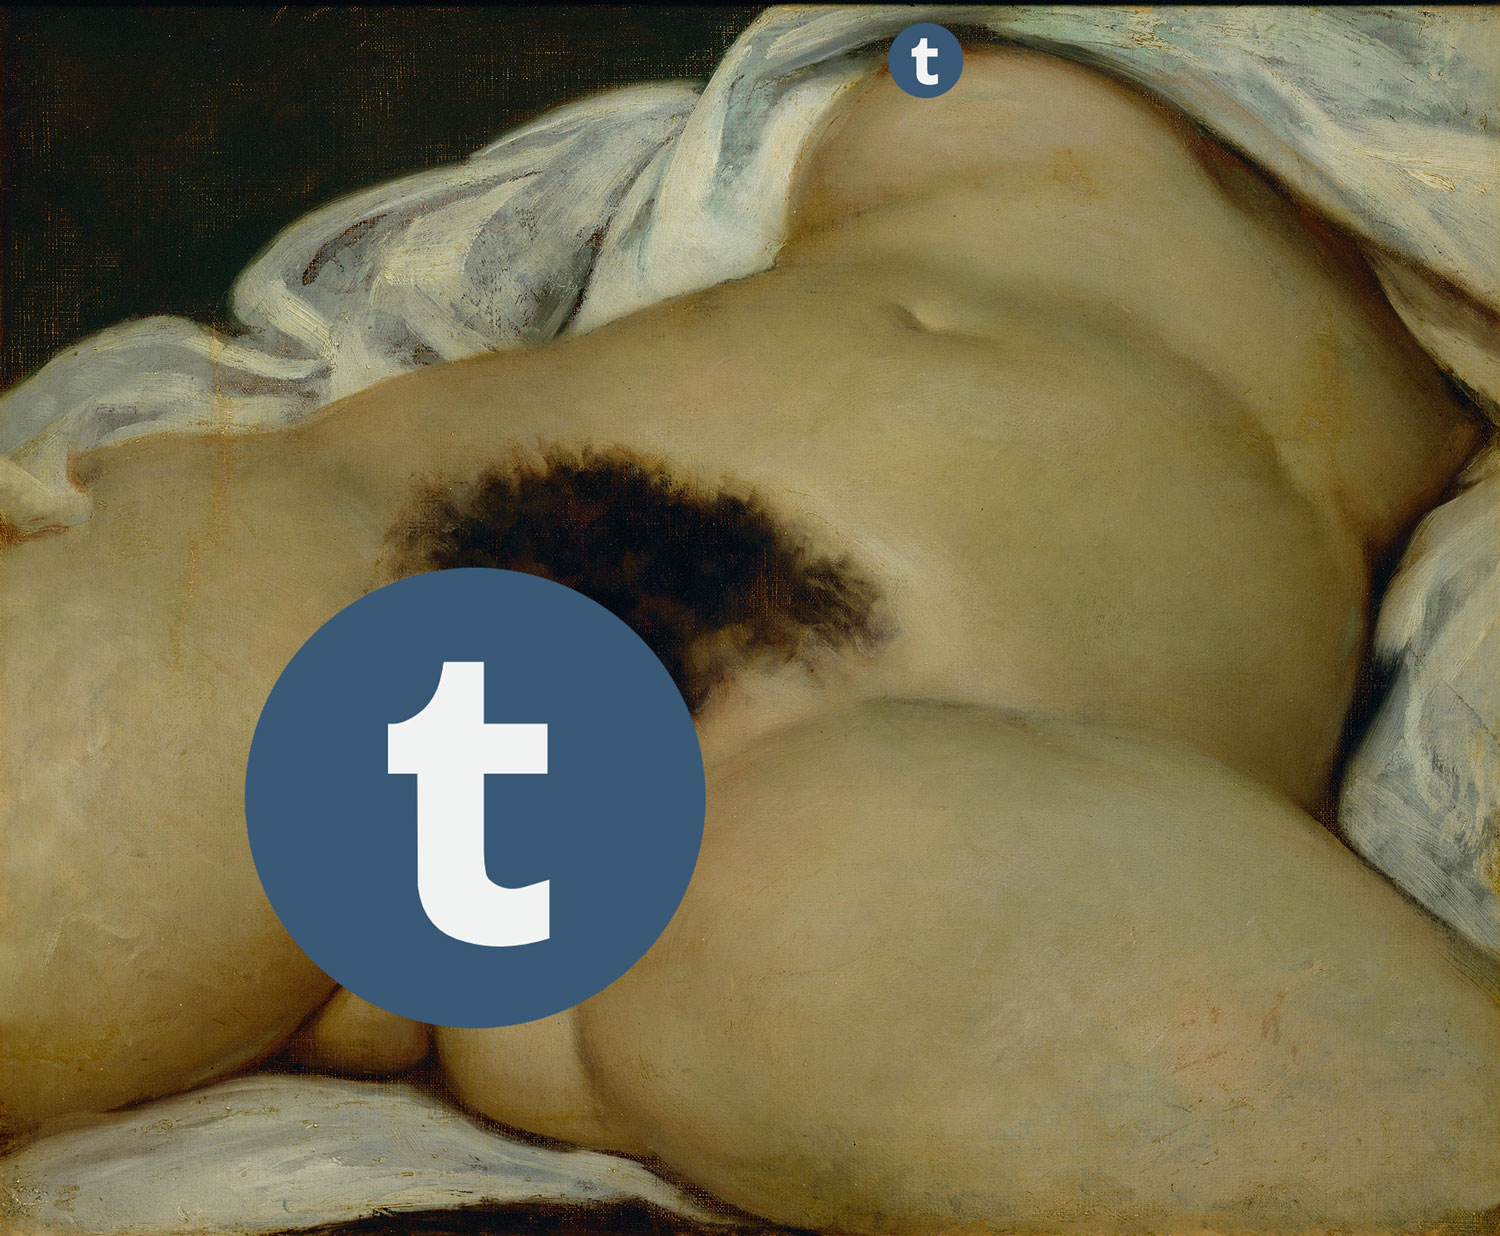 Volgens seksbloggers is Tumblr ten dode opgeschreven nu ze alle porno verbieden foto